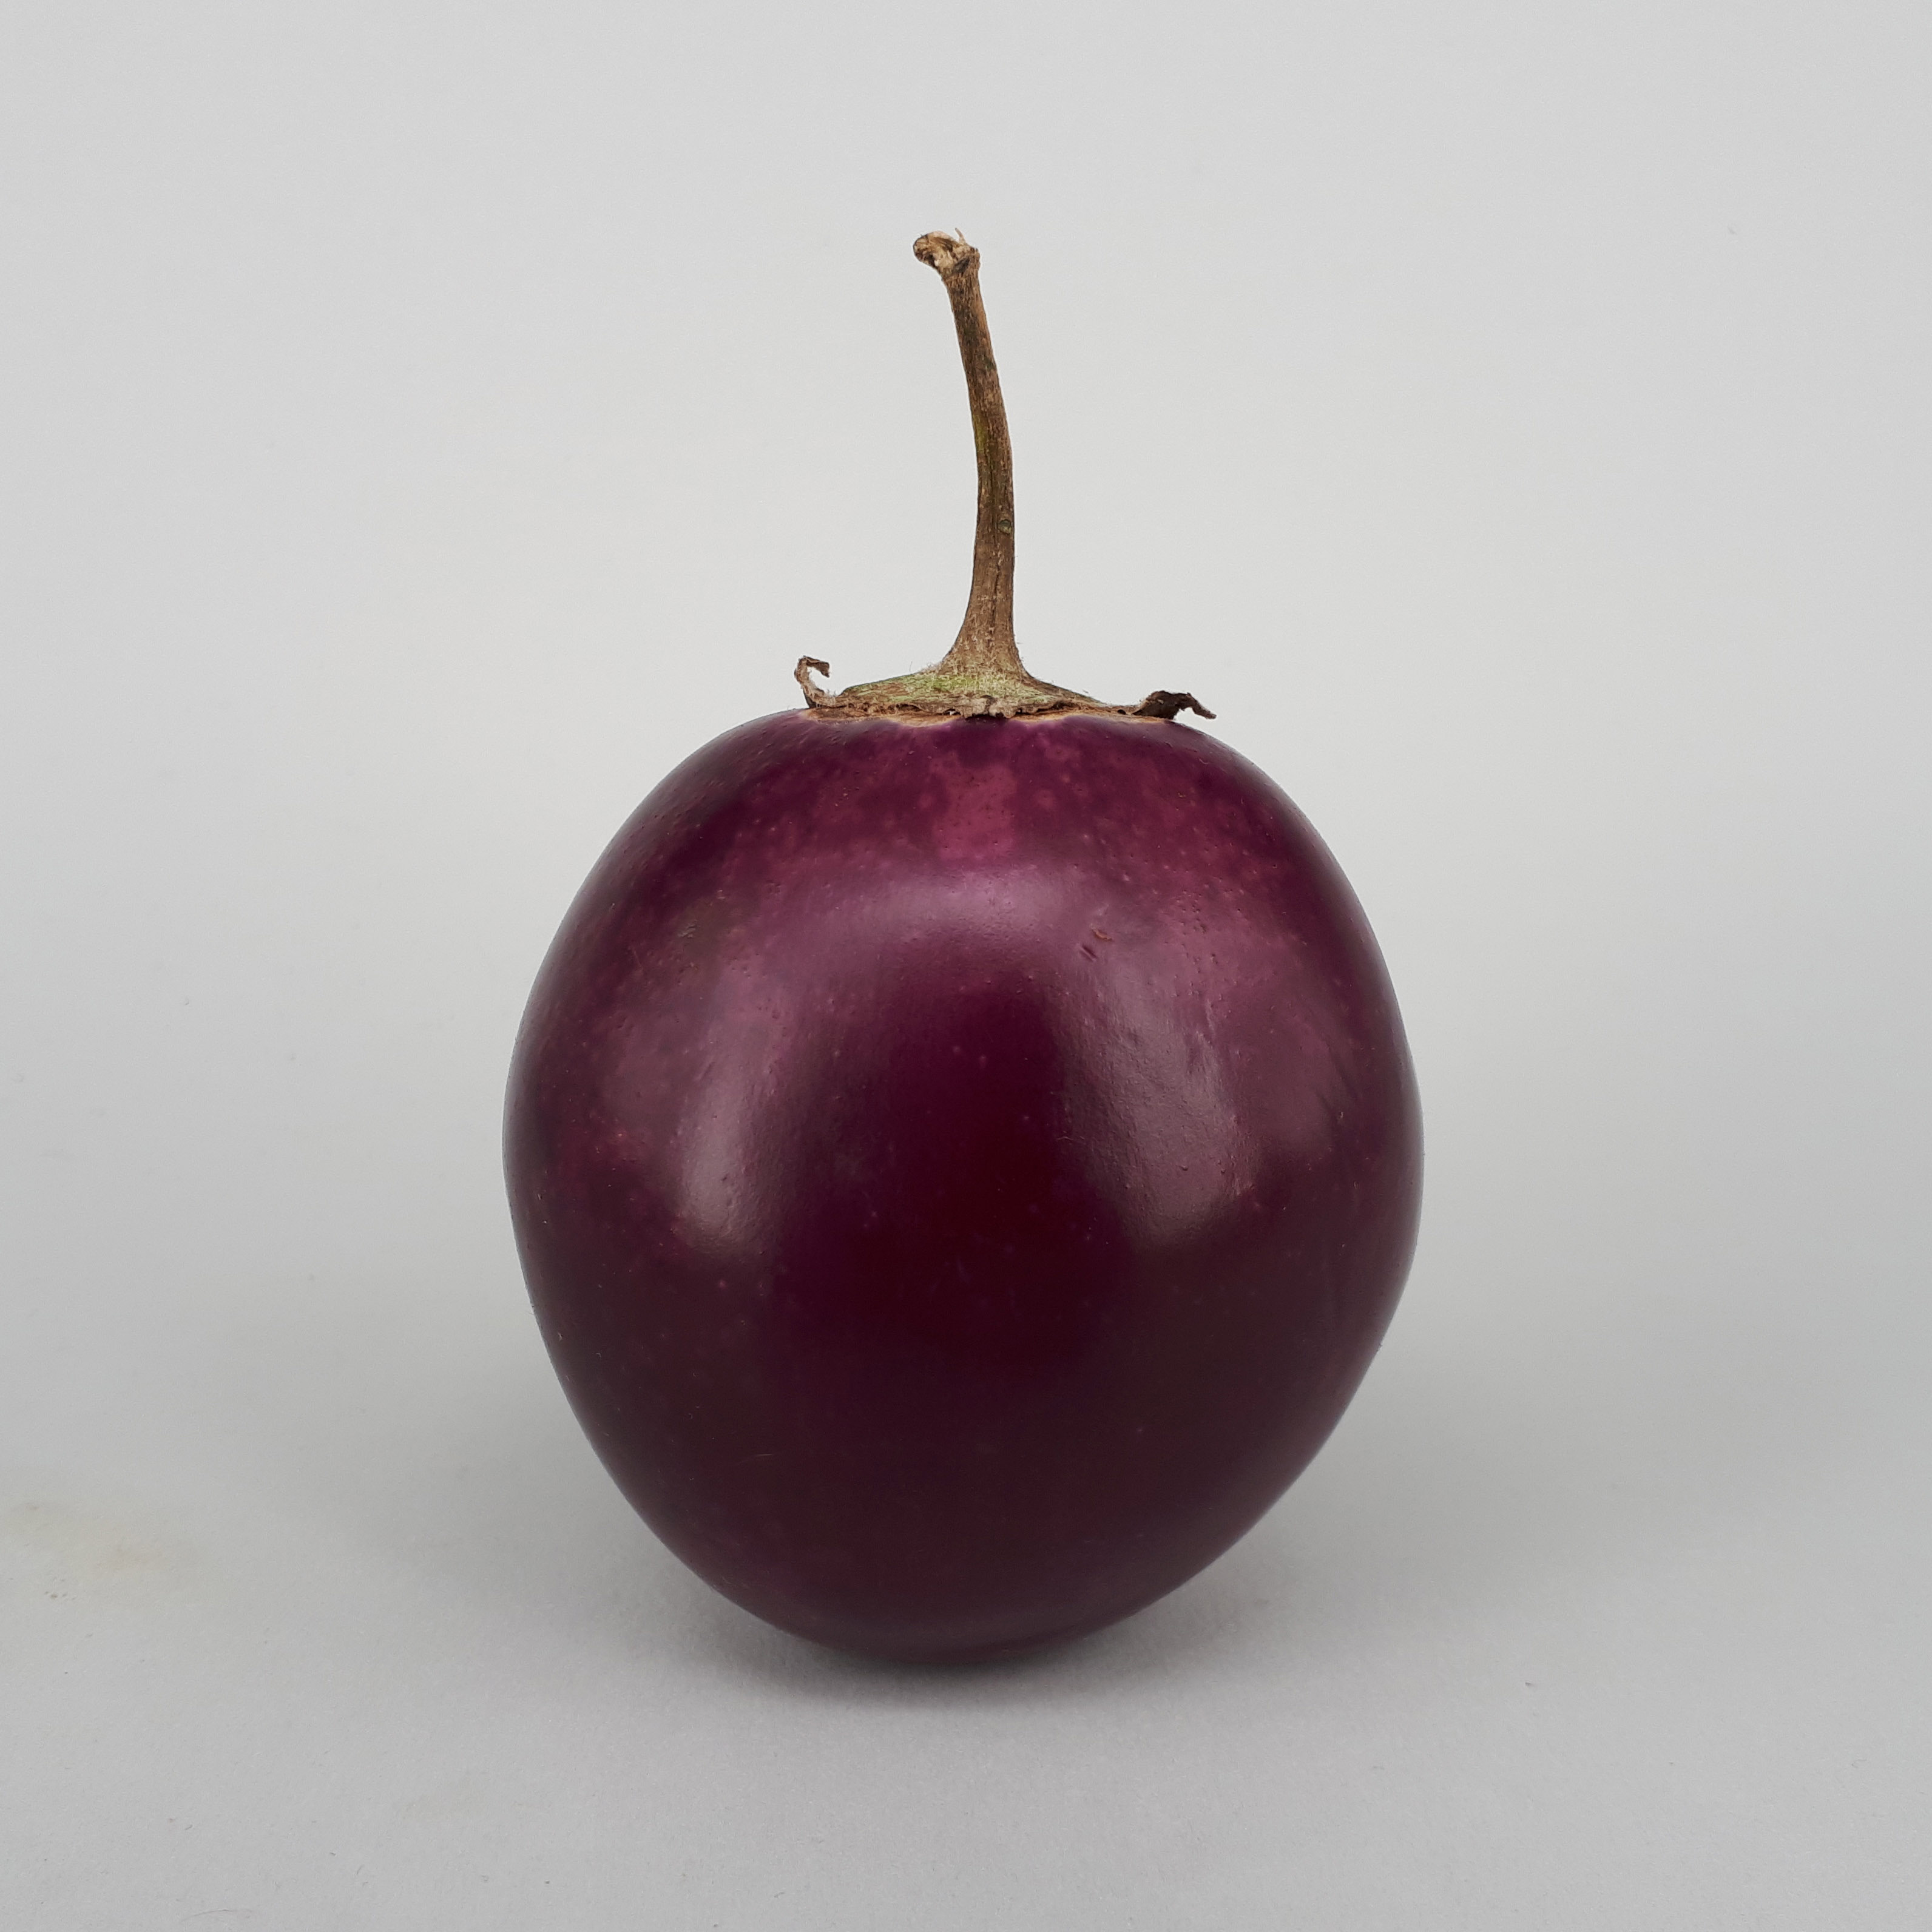 Ratna eggplant 2017 B1